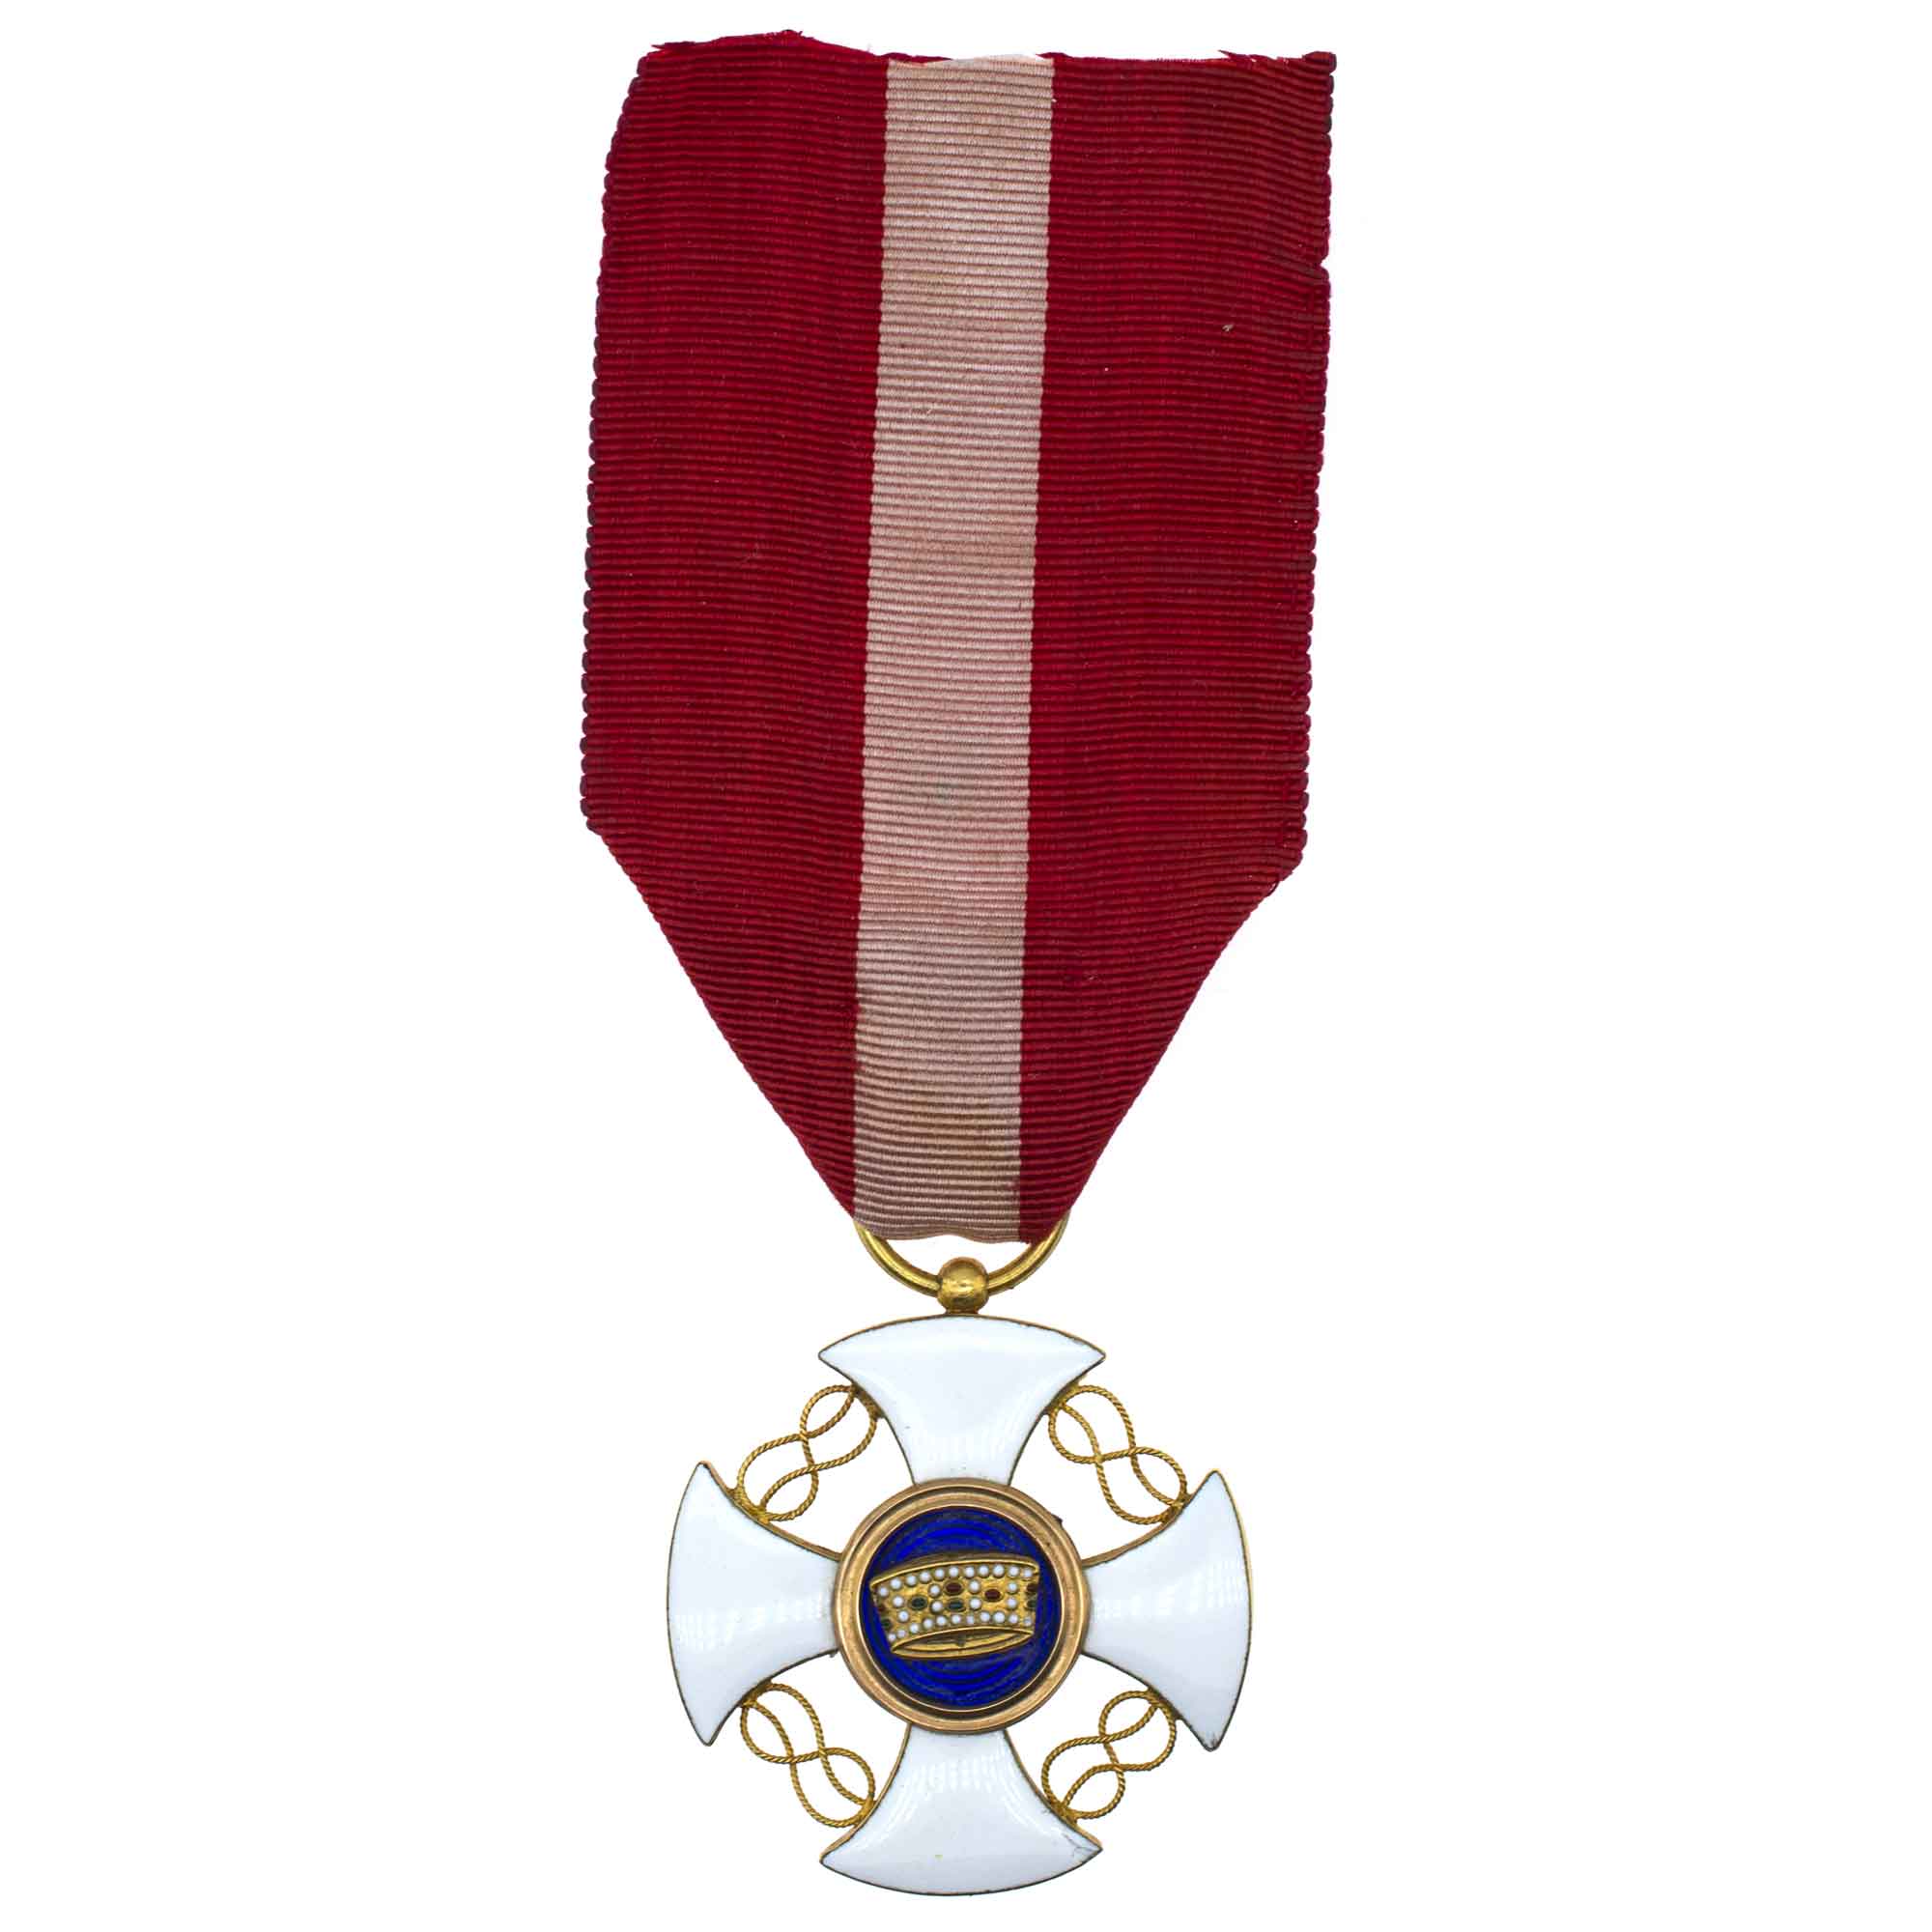 Италия. Знак Ордена (Крест Рупперта) "Короны Италии" 5 степень.